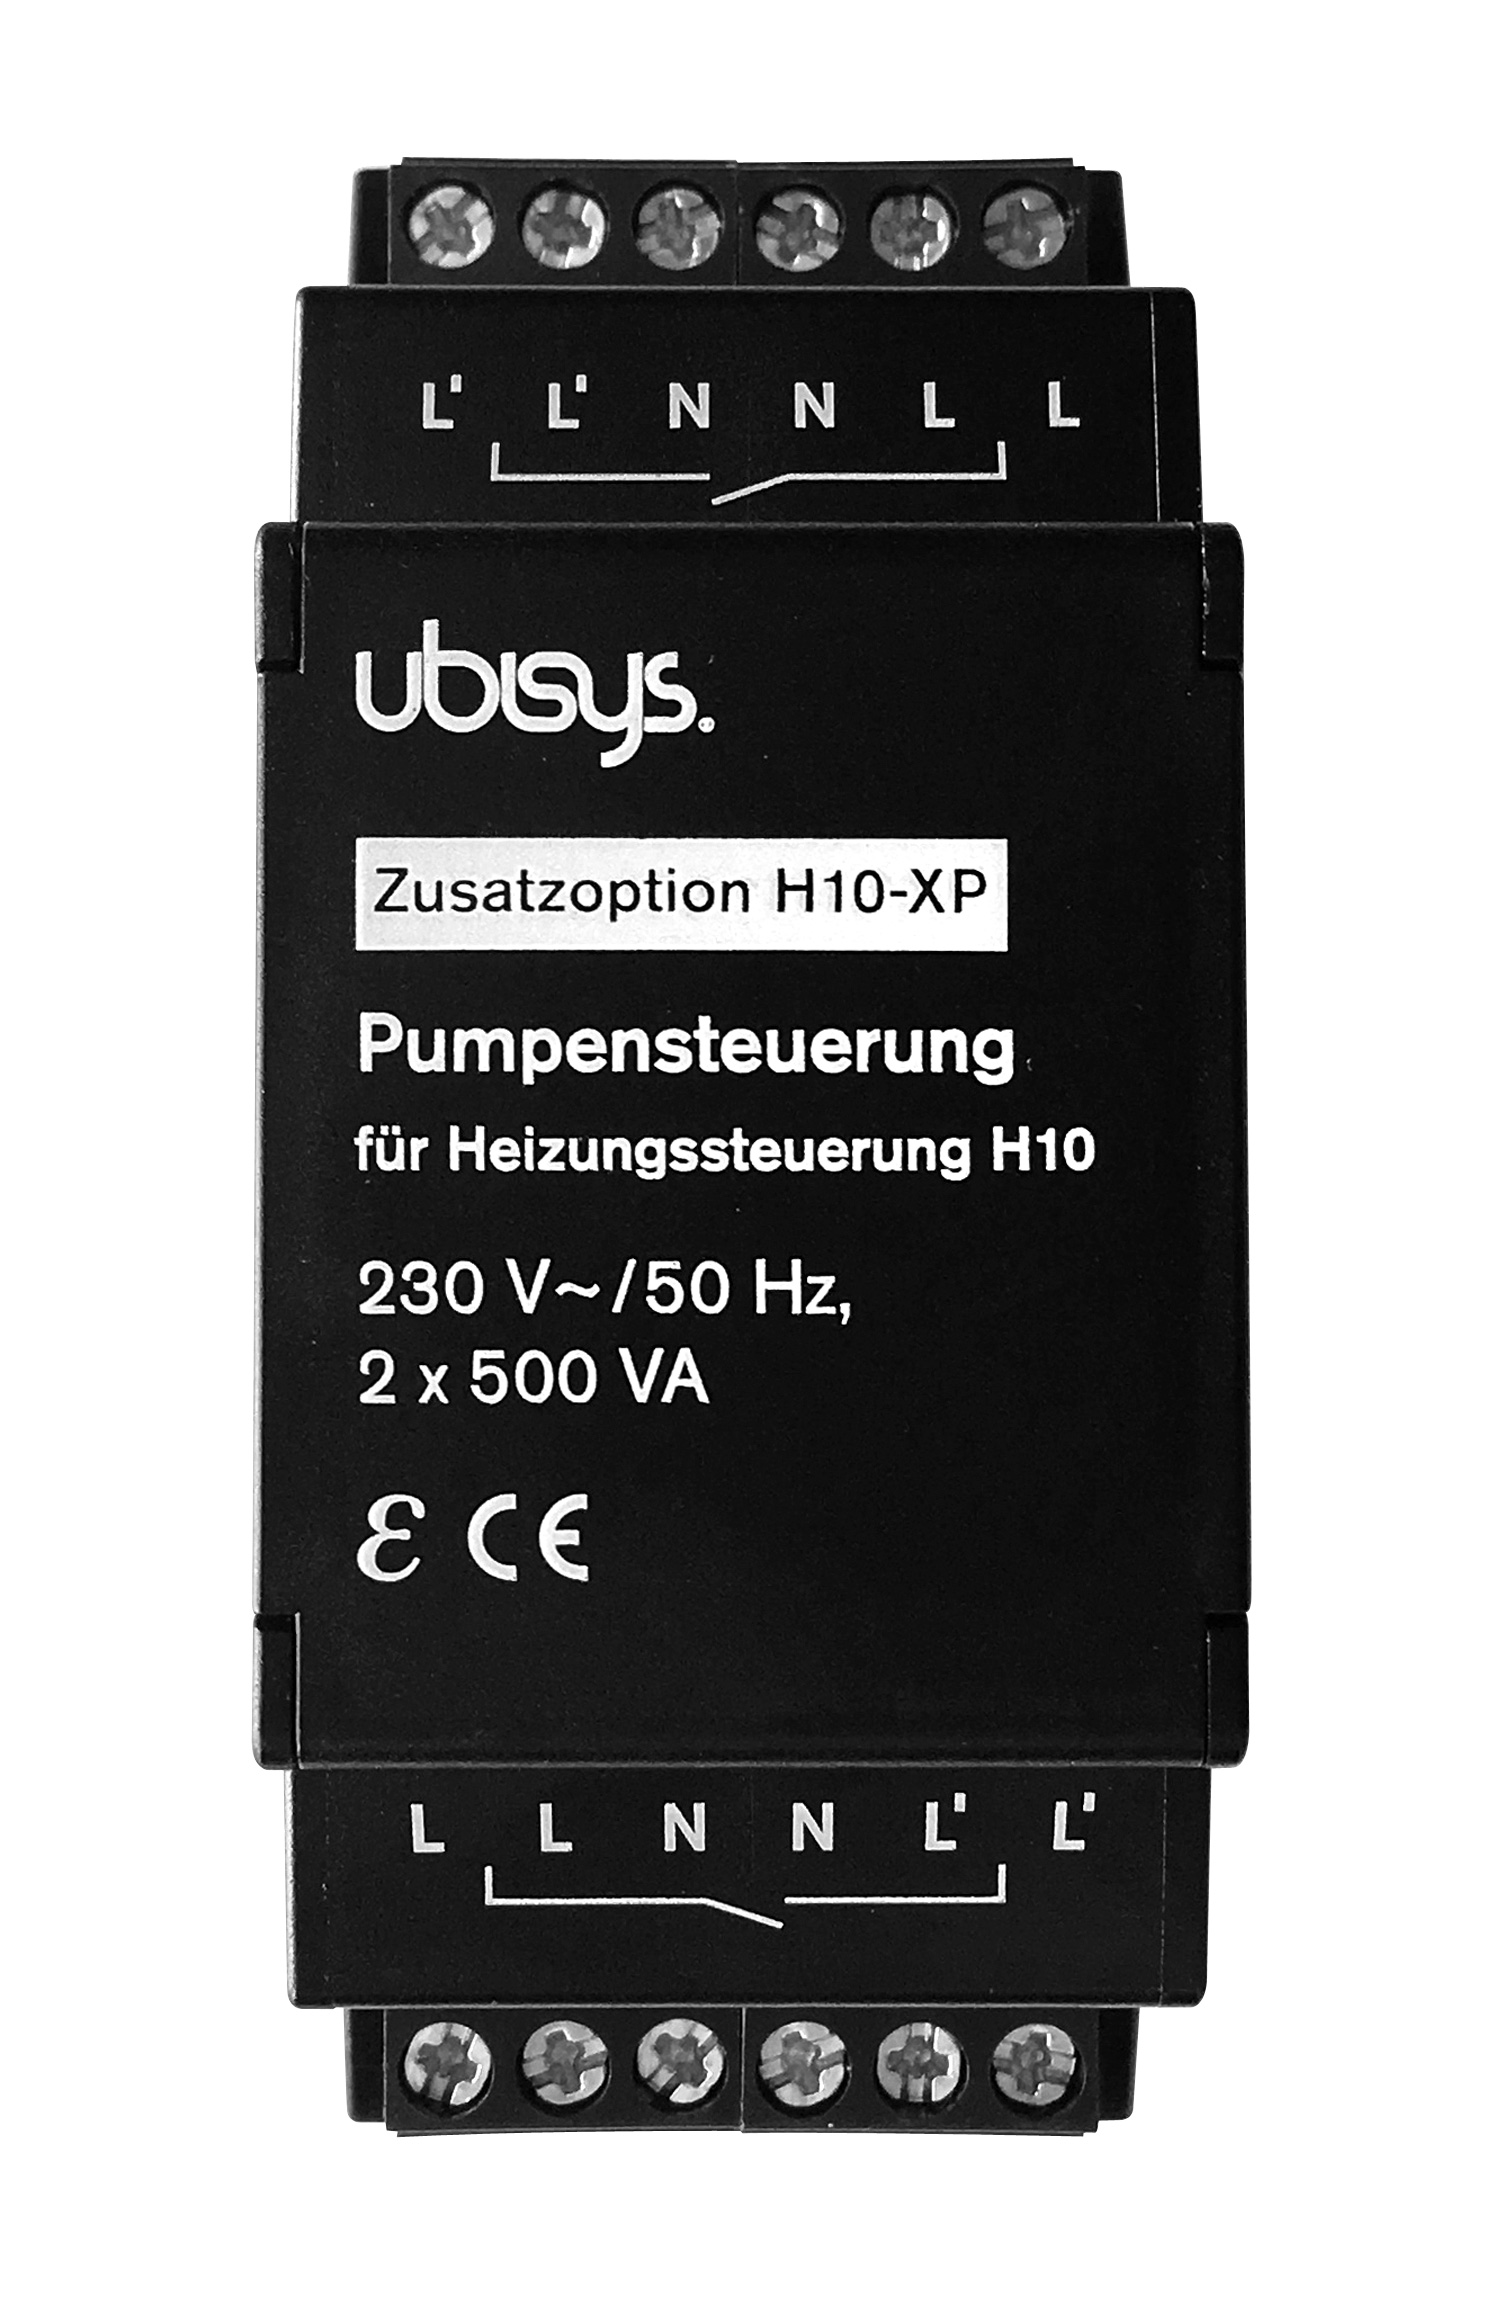 UBISYS Pumpensteuerung für H10 für Add-on Heizungssteuerung, Smart Schwarz Home